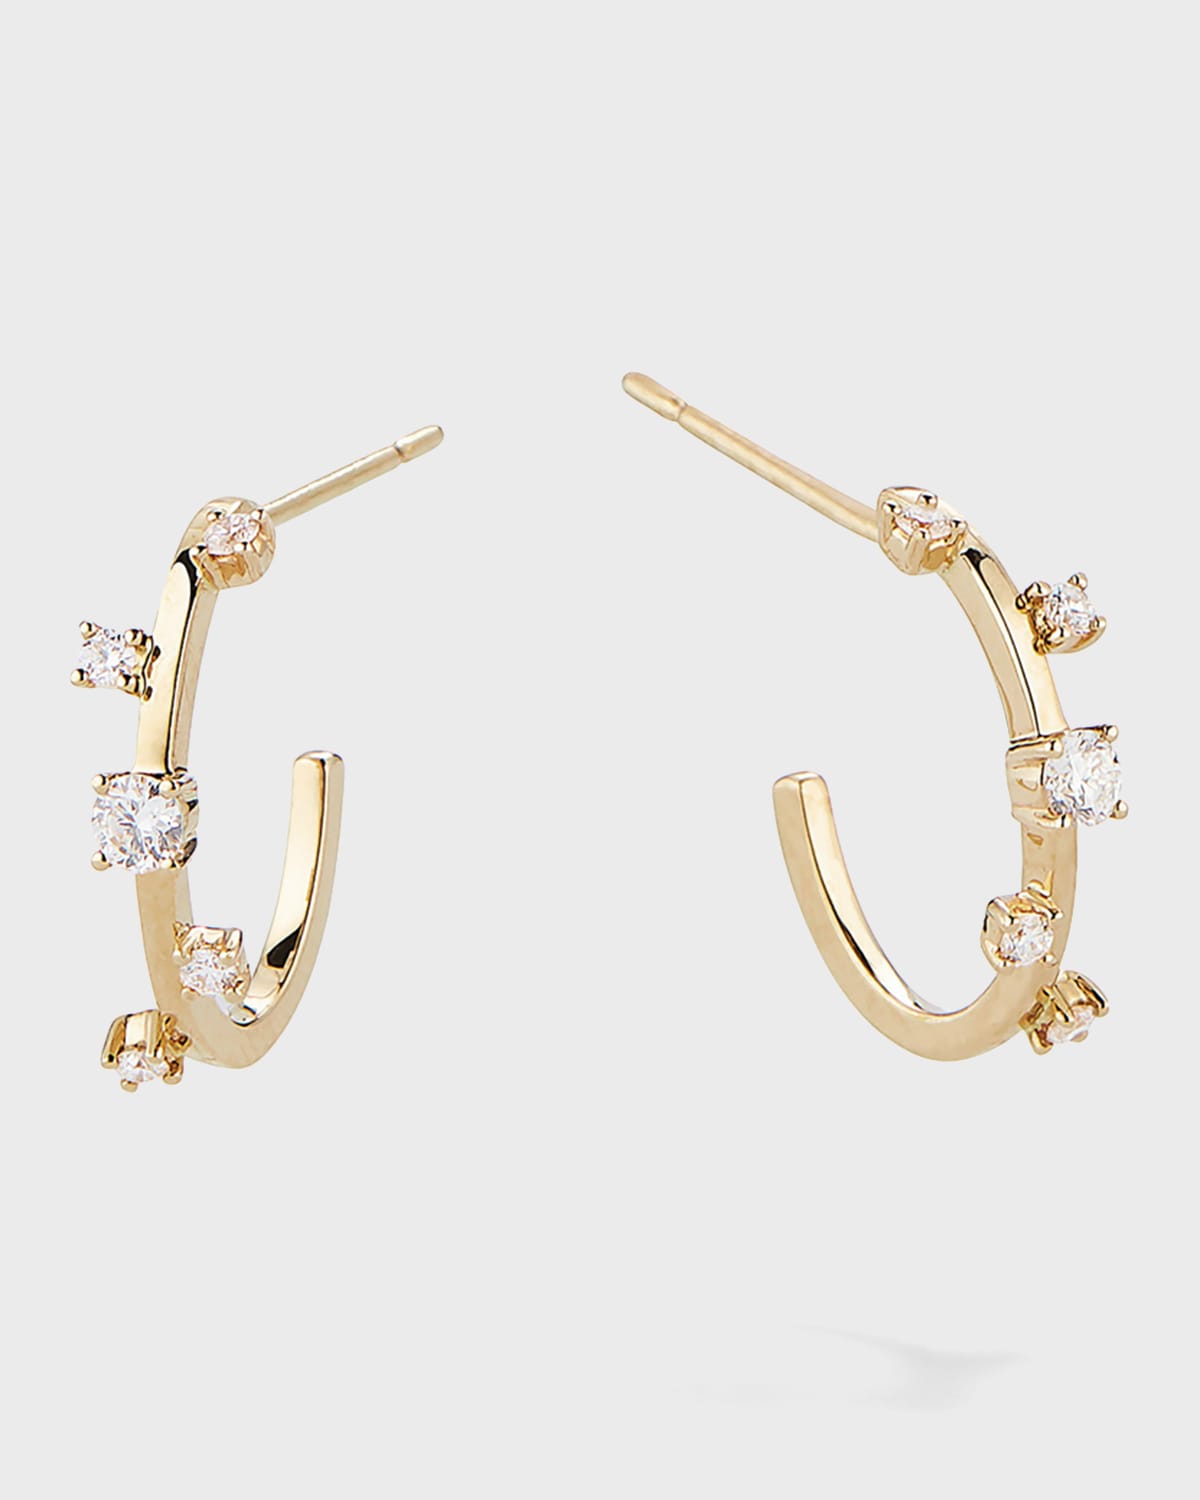 LANA JEWELRY 14k Gold & Diamond Solo Hoop Earrings